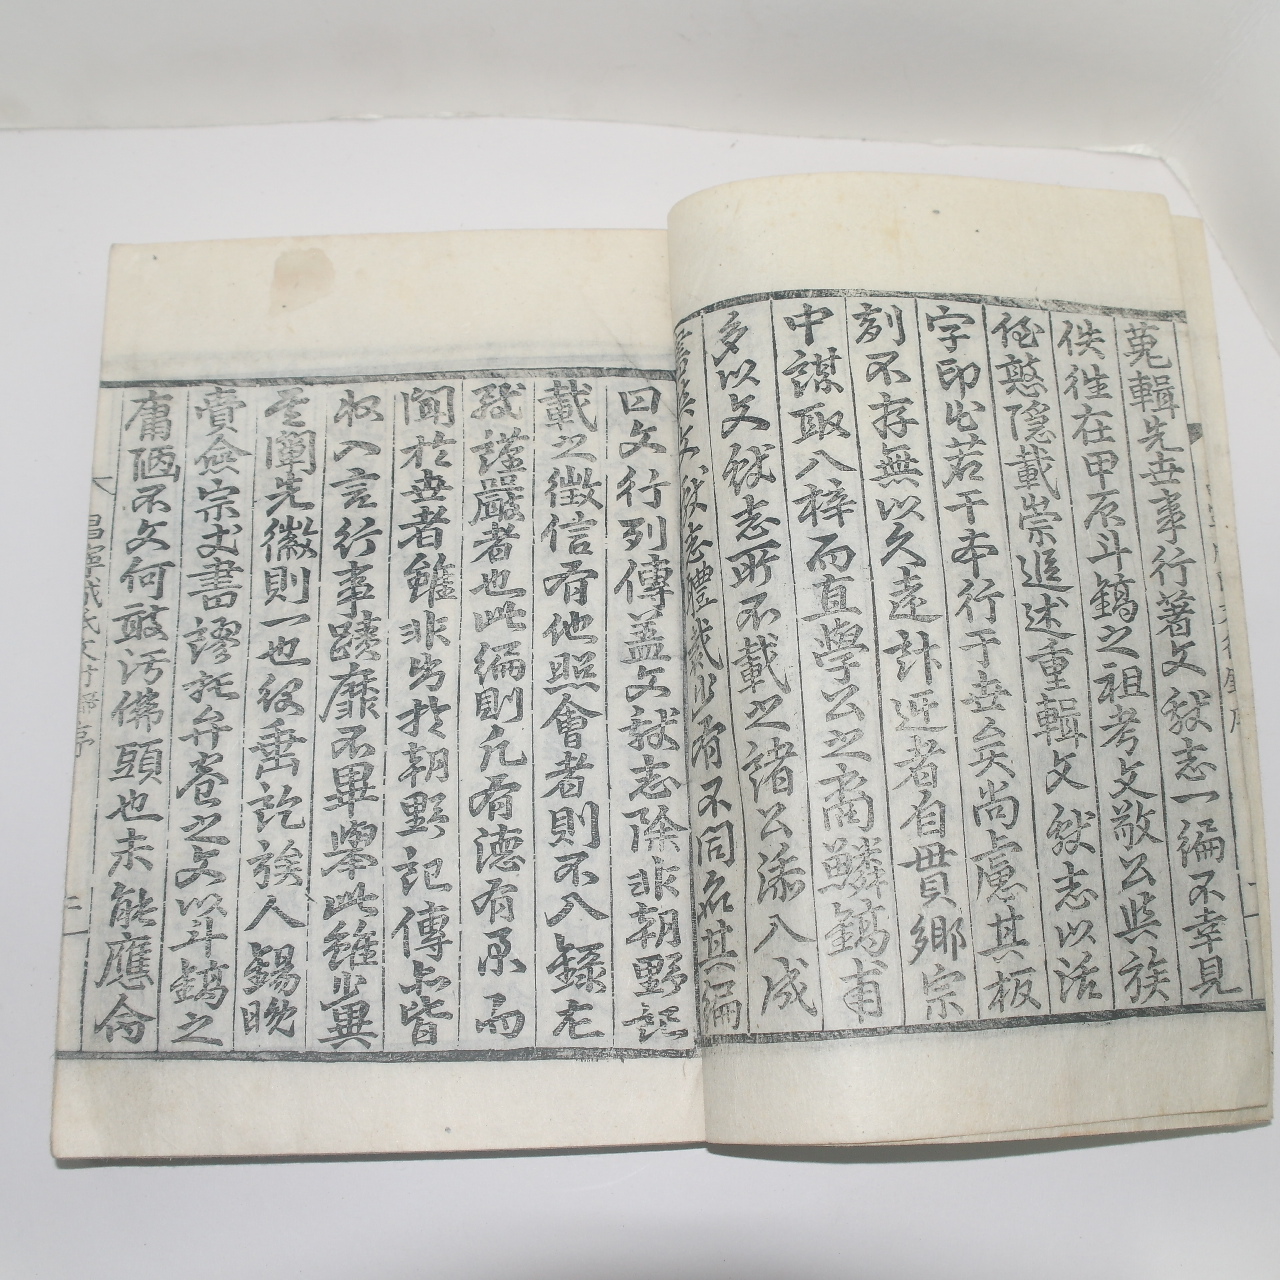 1900년 목판본 창녕성씨문행열전(昌寧成氏文行列傳) 1책완질